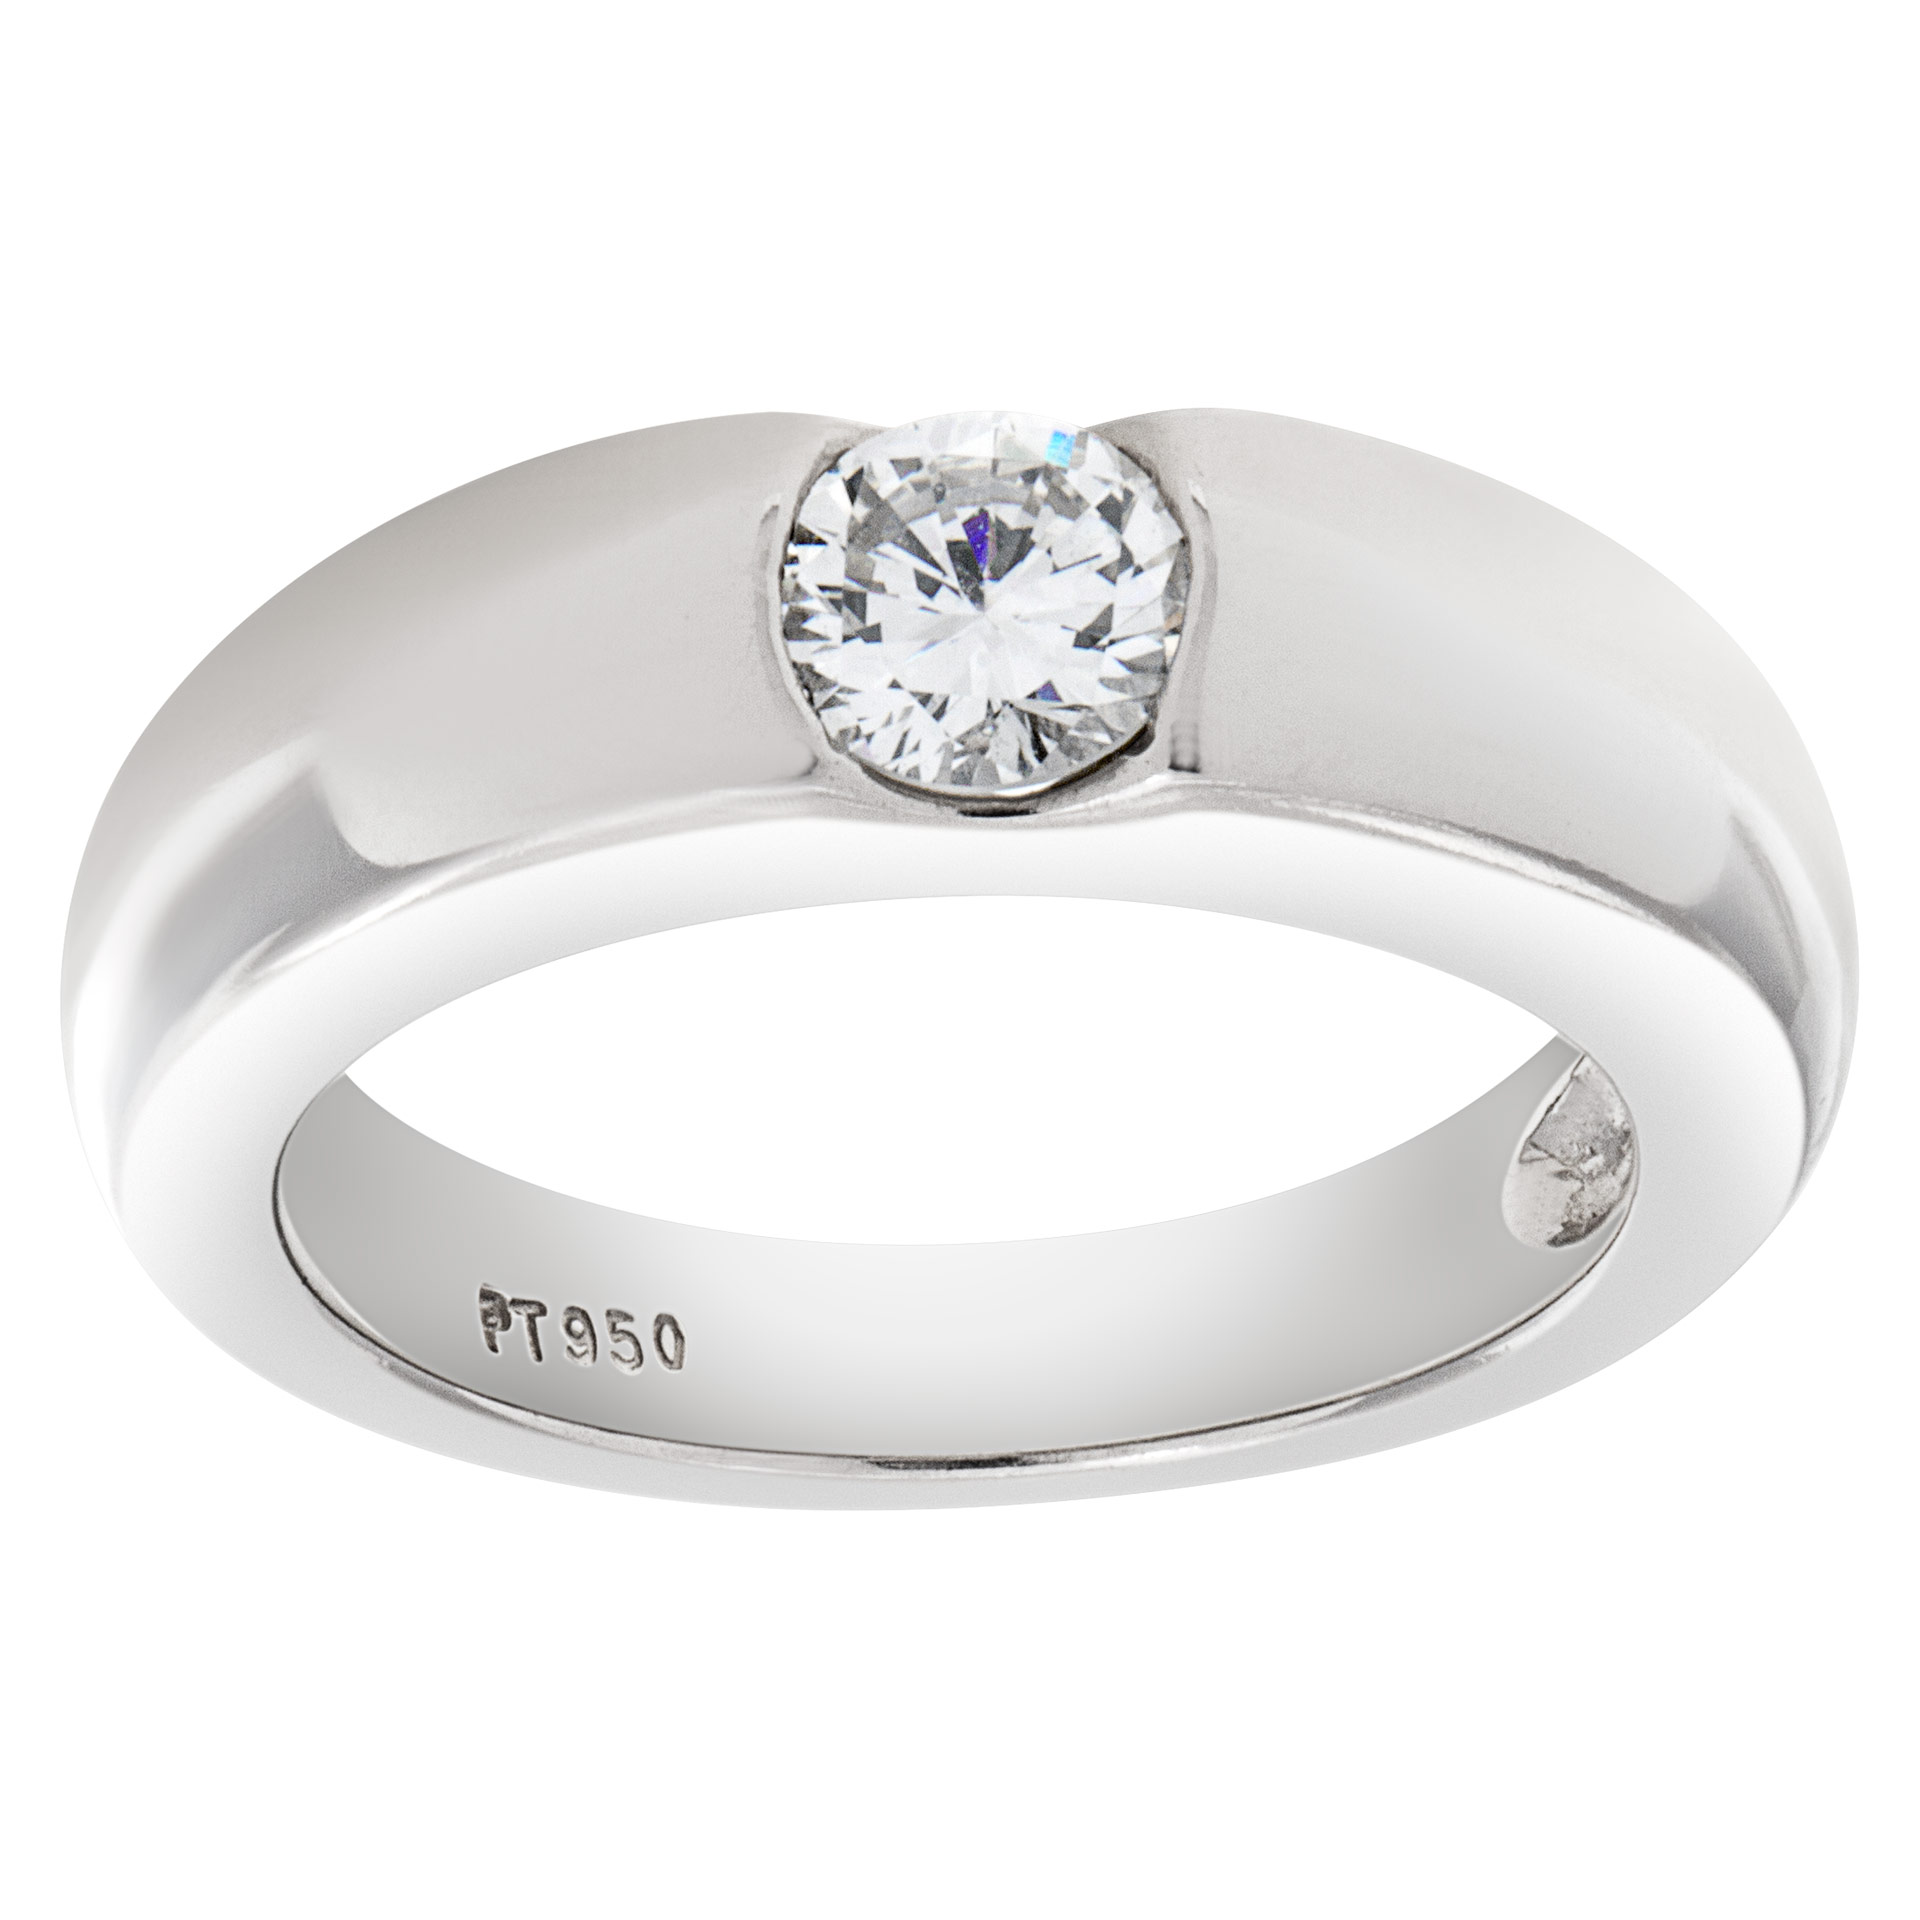 Gipsy solitare diamond ring set in platinum. 0.50 carat full cut round brilliant center diamond